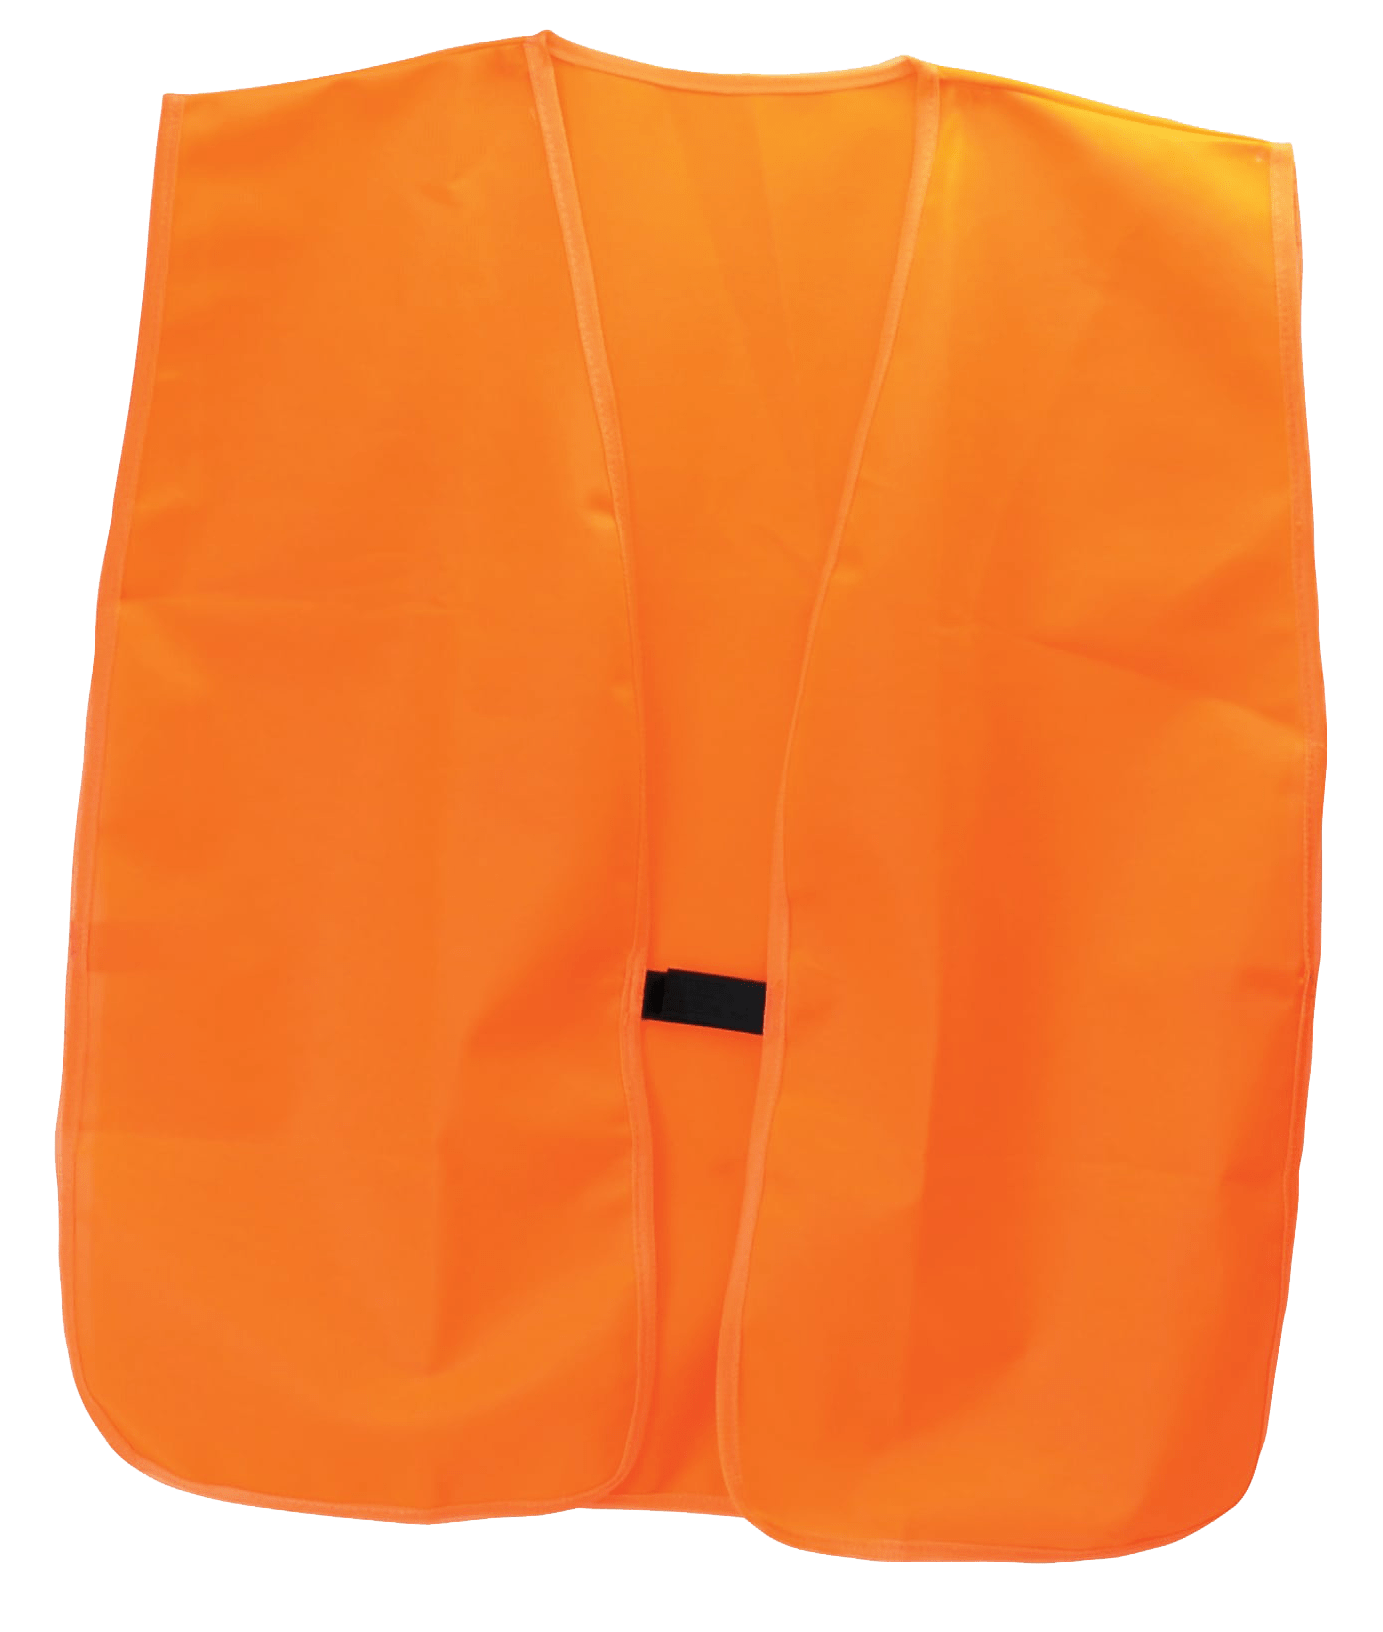 HME Hme Safety Vest, Hme Vest-or        Safety Vest Orange Accessories